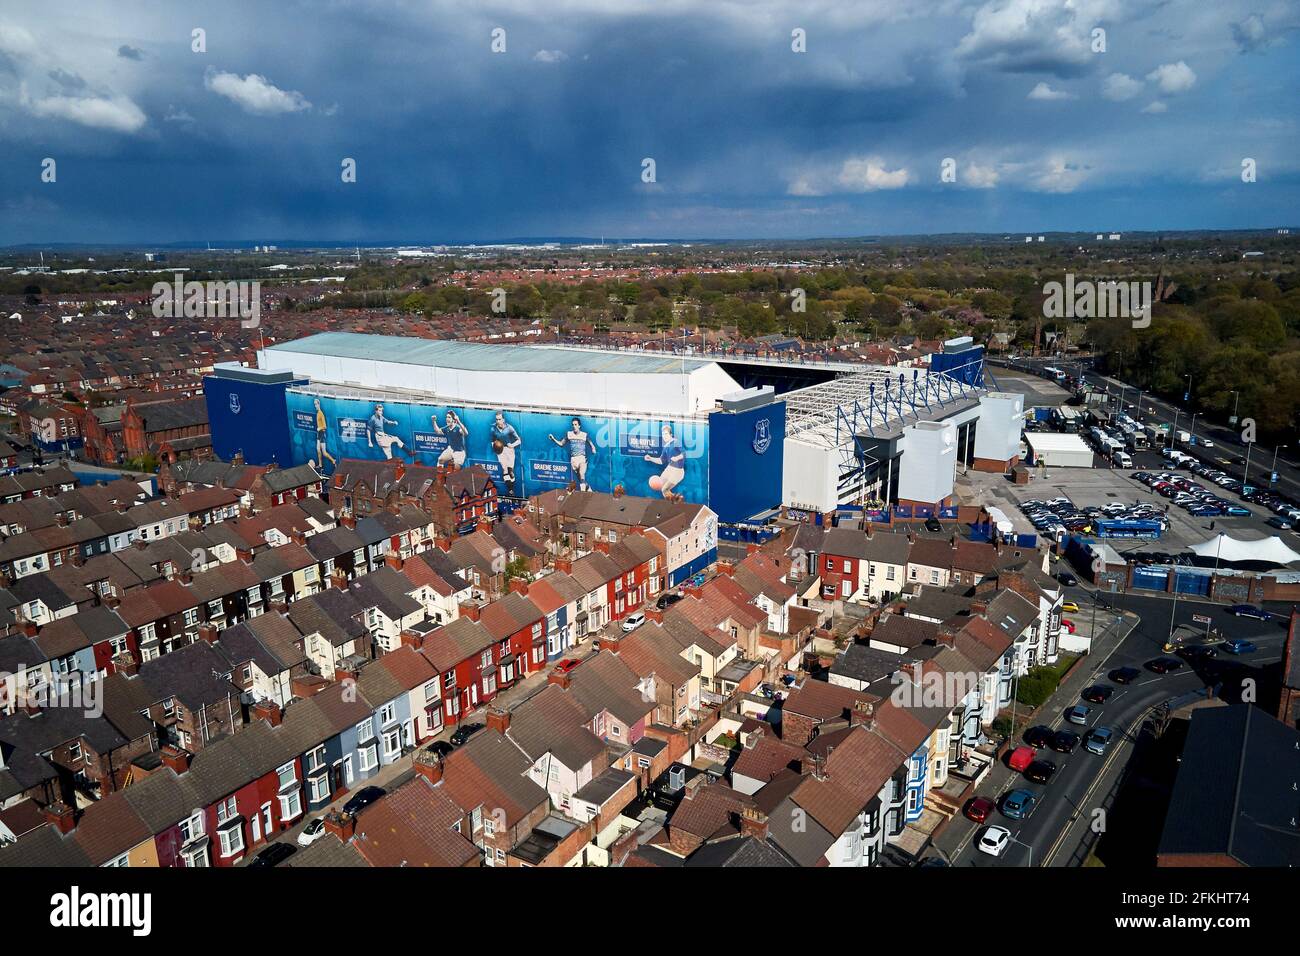 Vue aérienne du parc Goodison montrant le stade dans son cadre urbain entouré de maisons résidentielles Banque D'Images